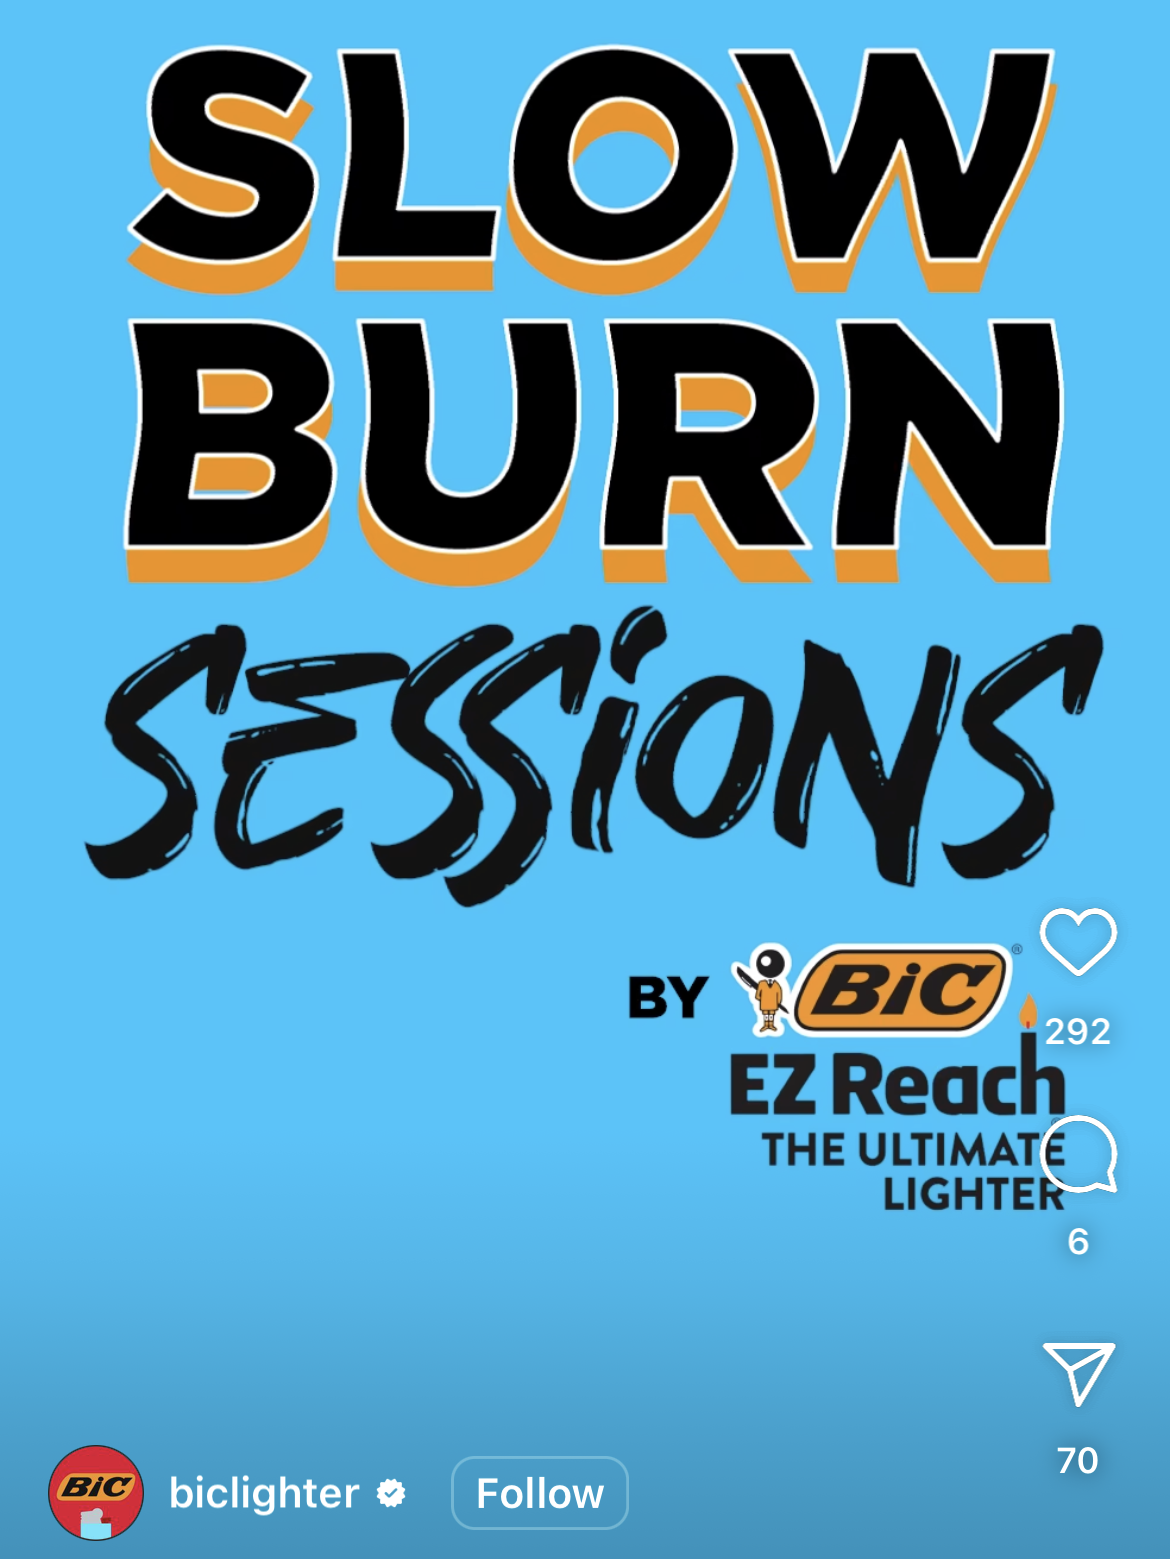 Bic 420 slow burn sessions